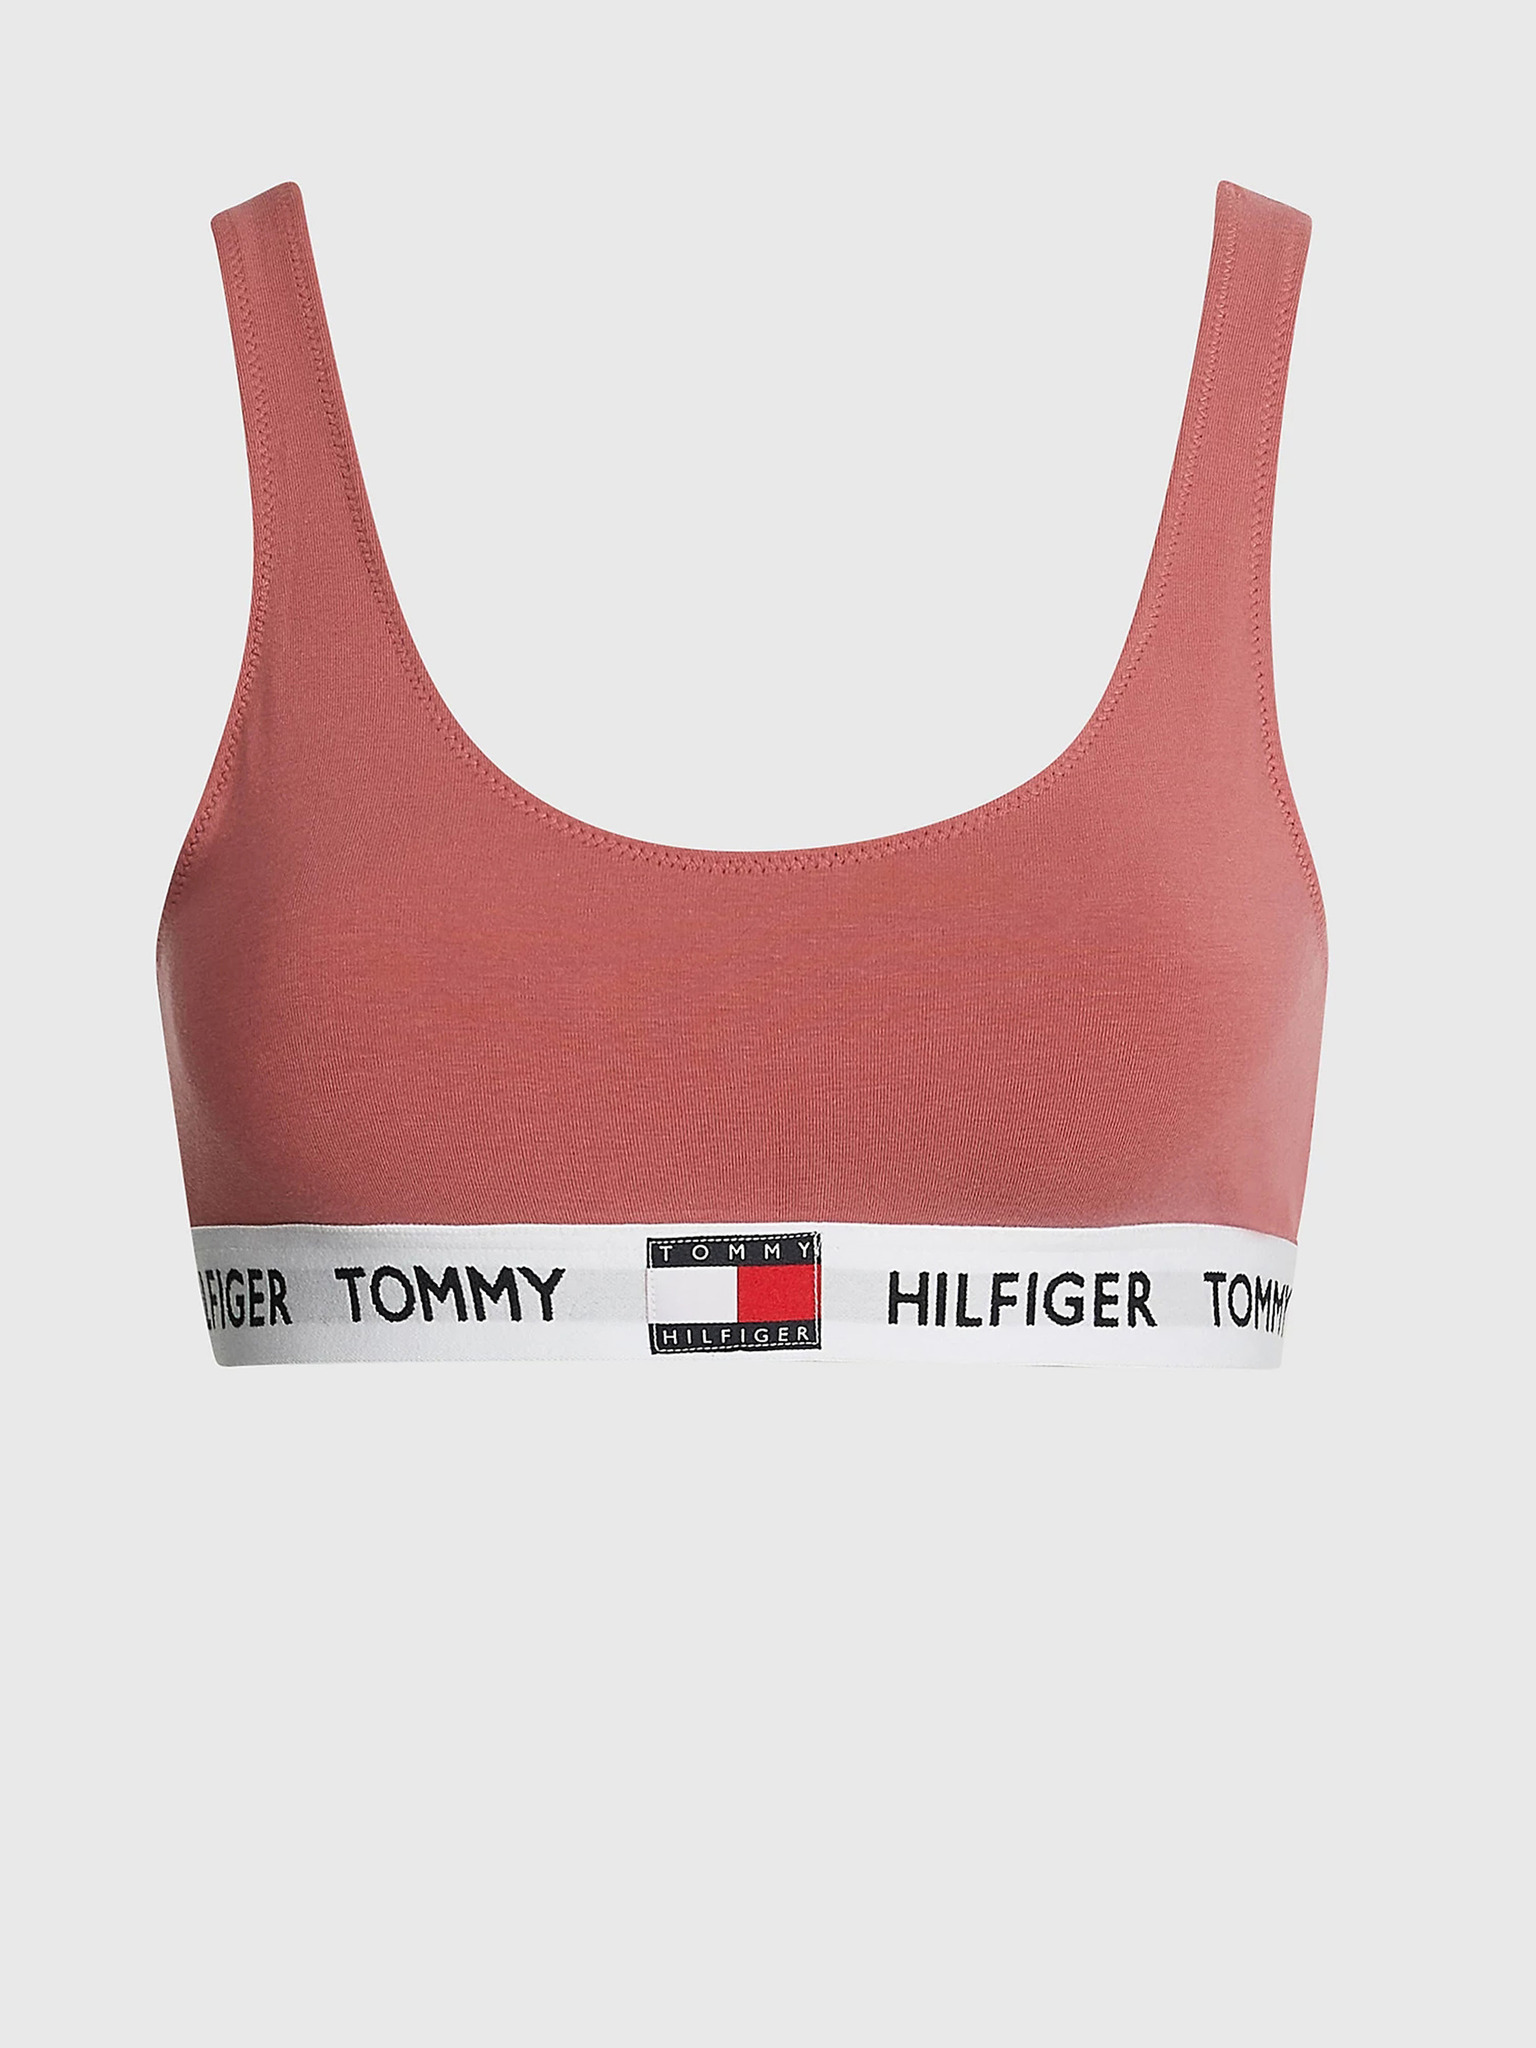 Women's underwear Tommy Hilfiger, Colour Red